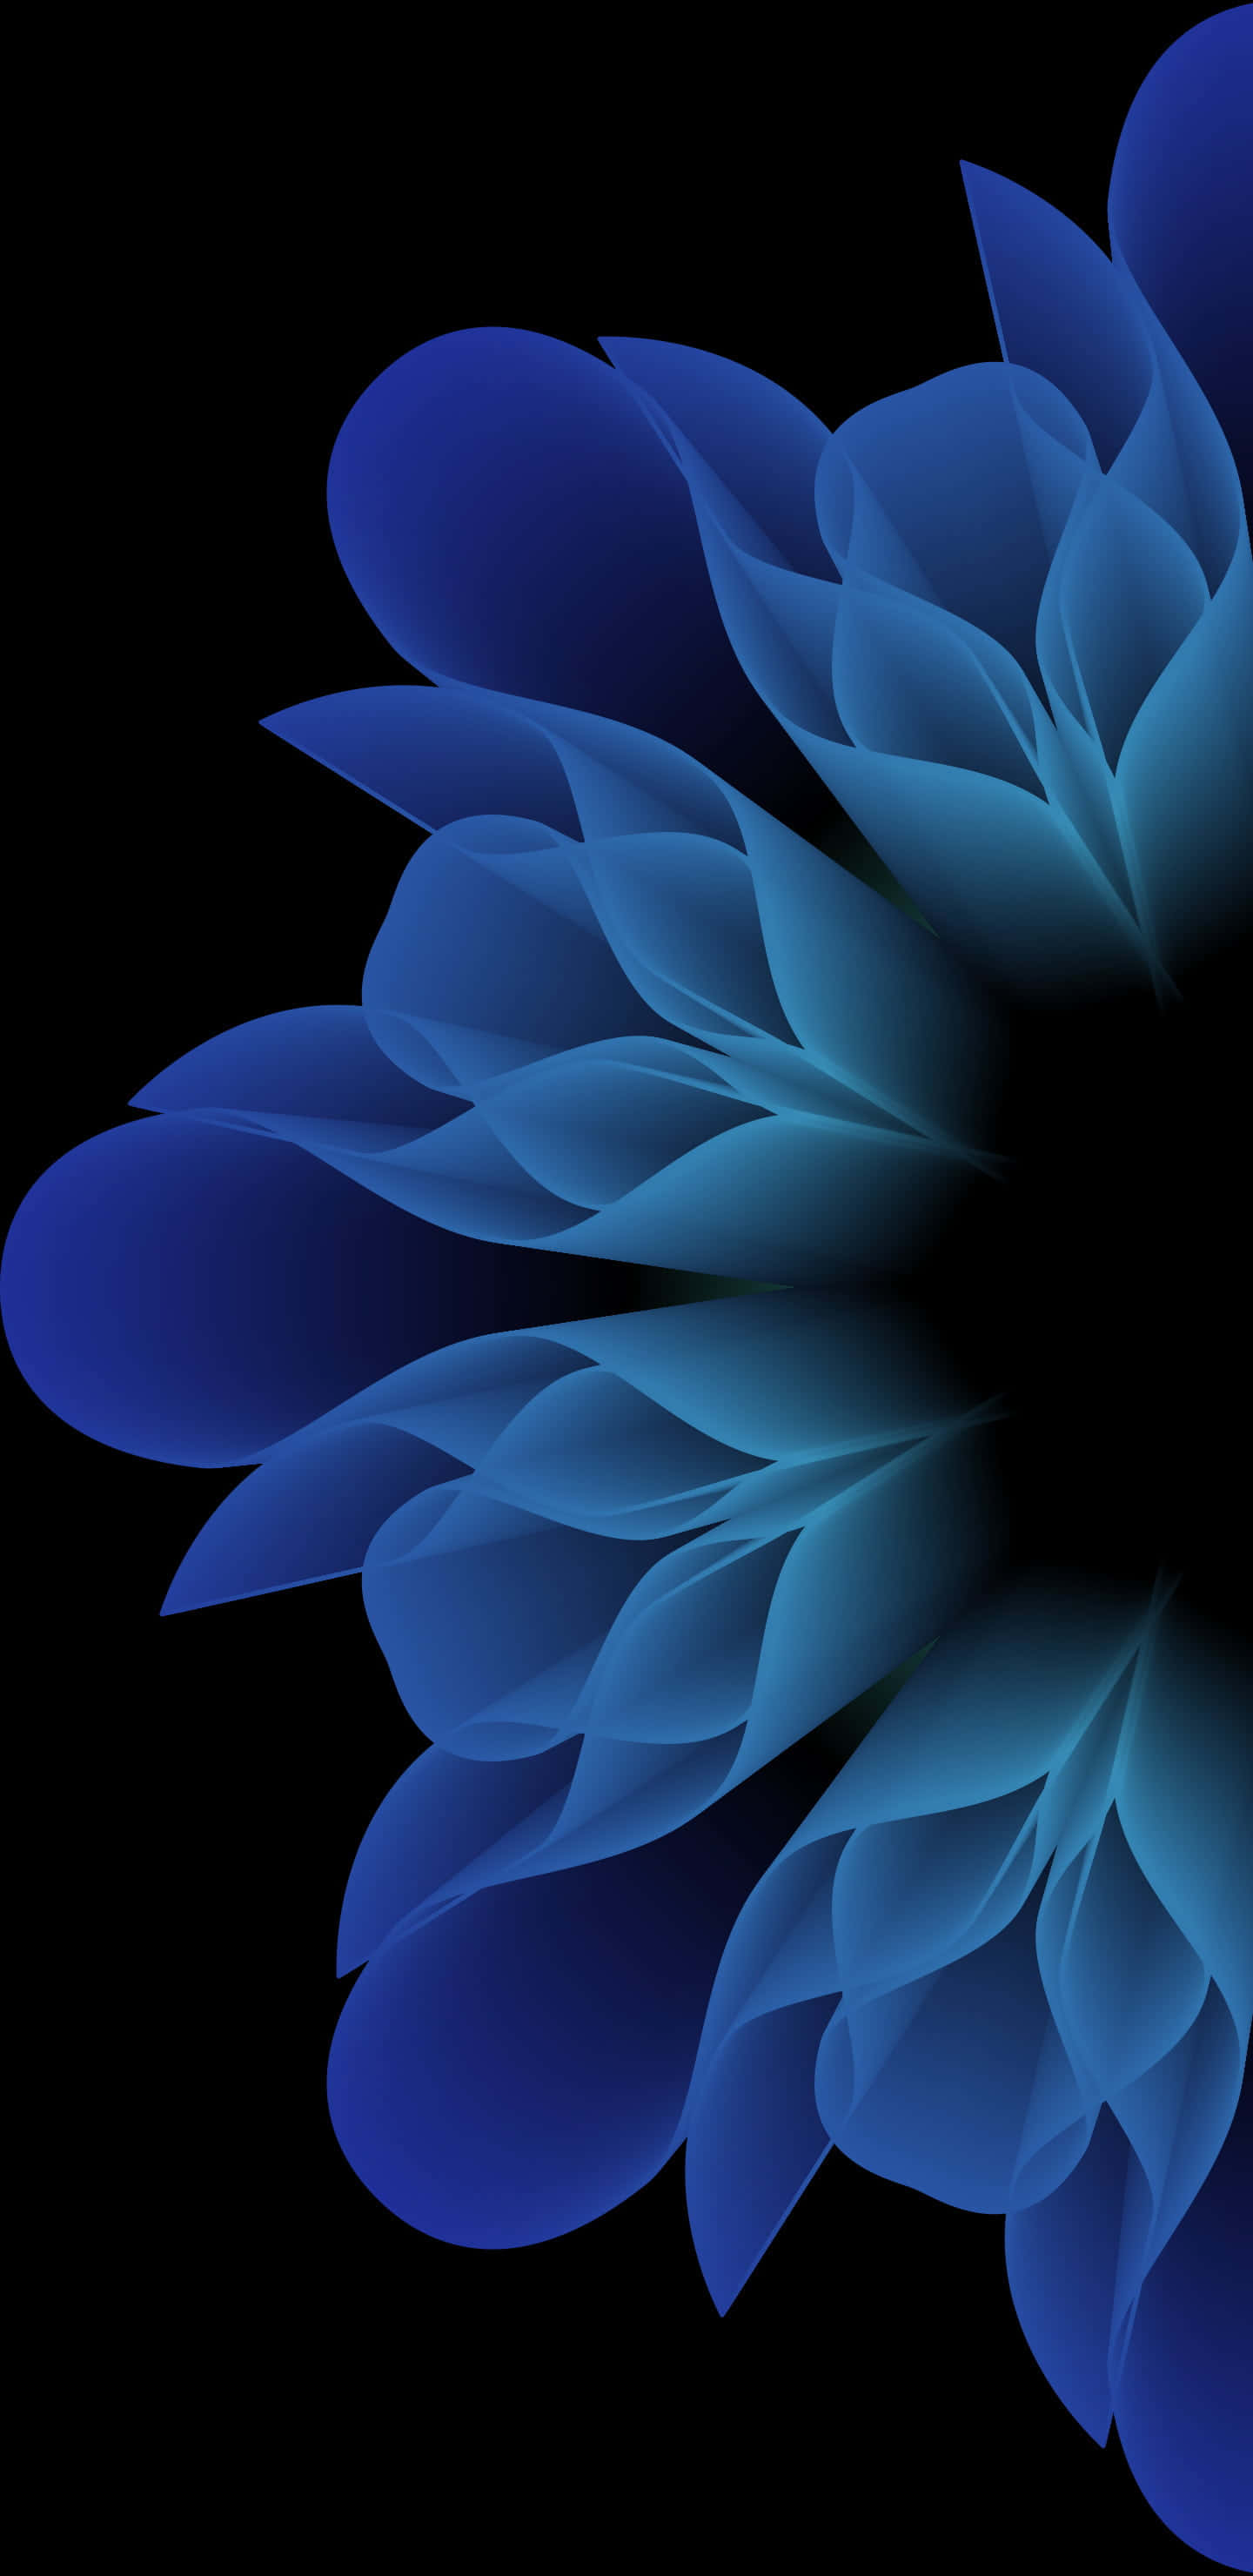 4k Amoled Background Blue Transparent Flowers Background